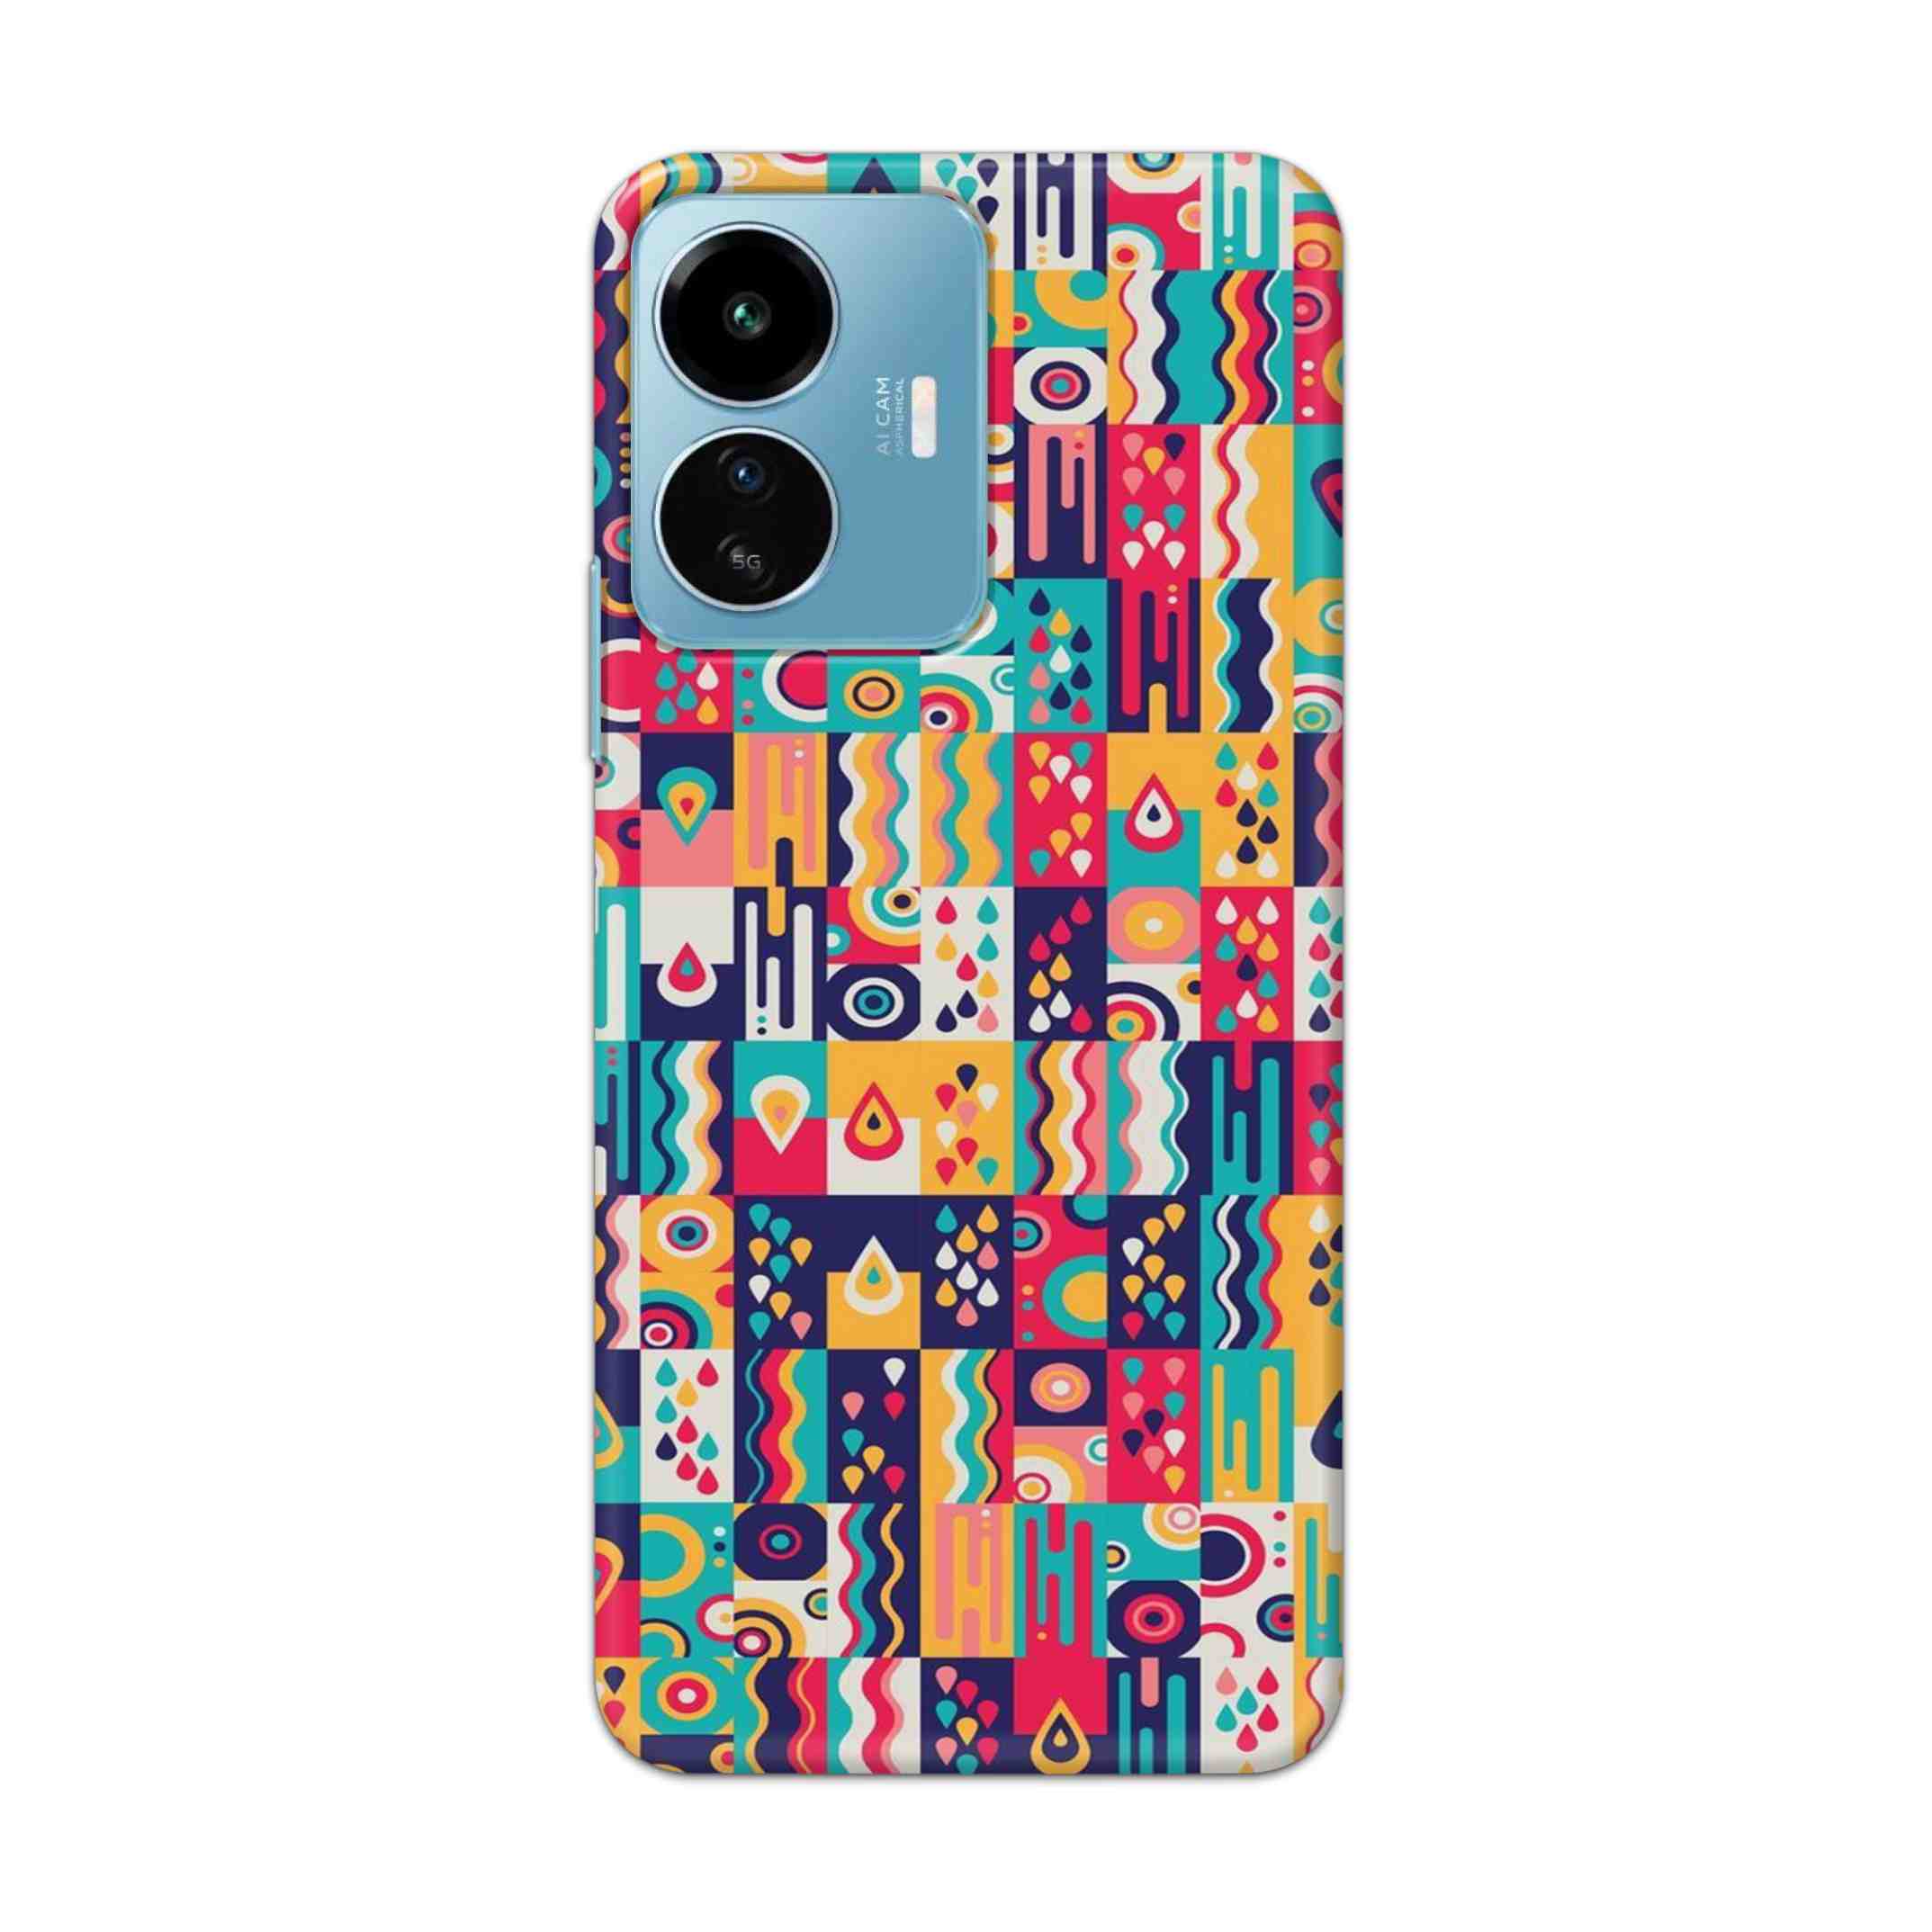 Buy Art Hard Back Mobile Phone Case Cover For IQOO Z6 Lite 5G Online